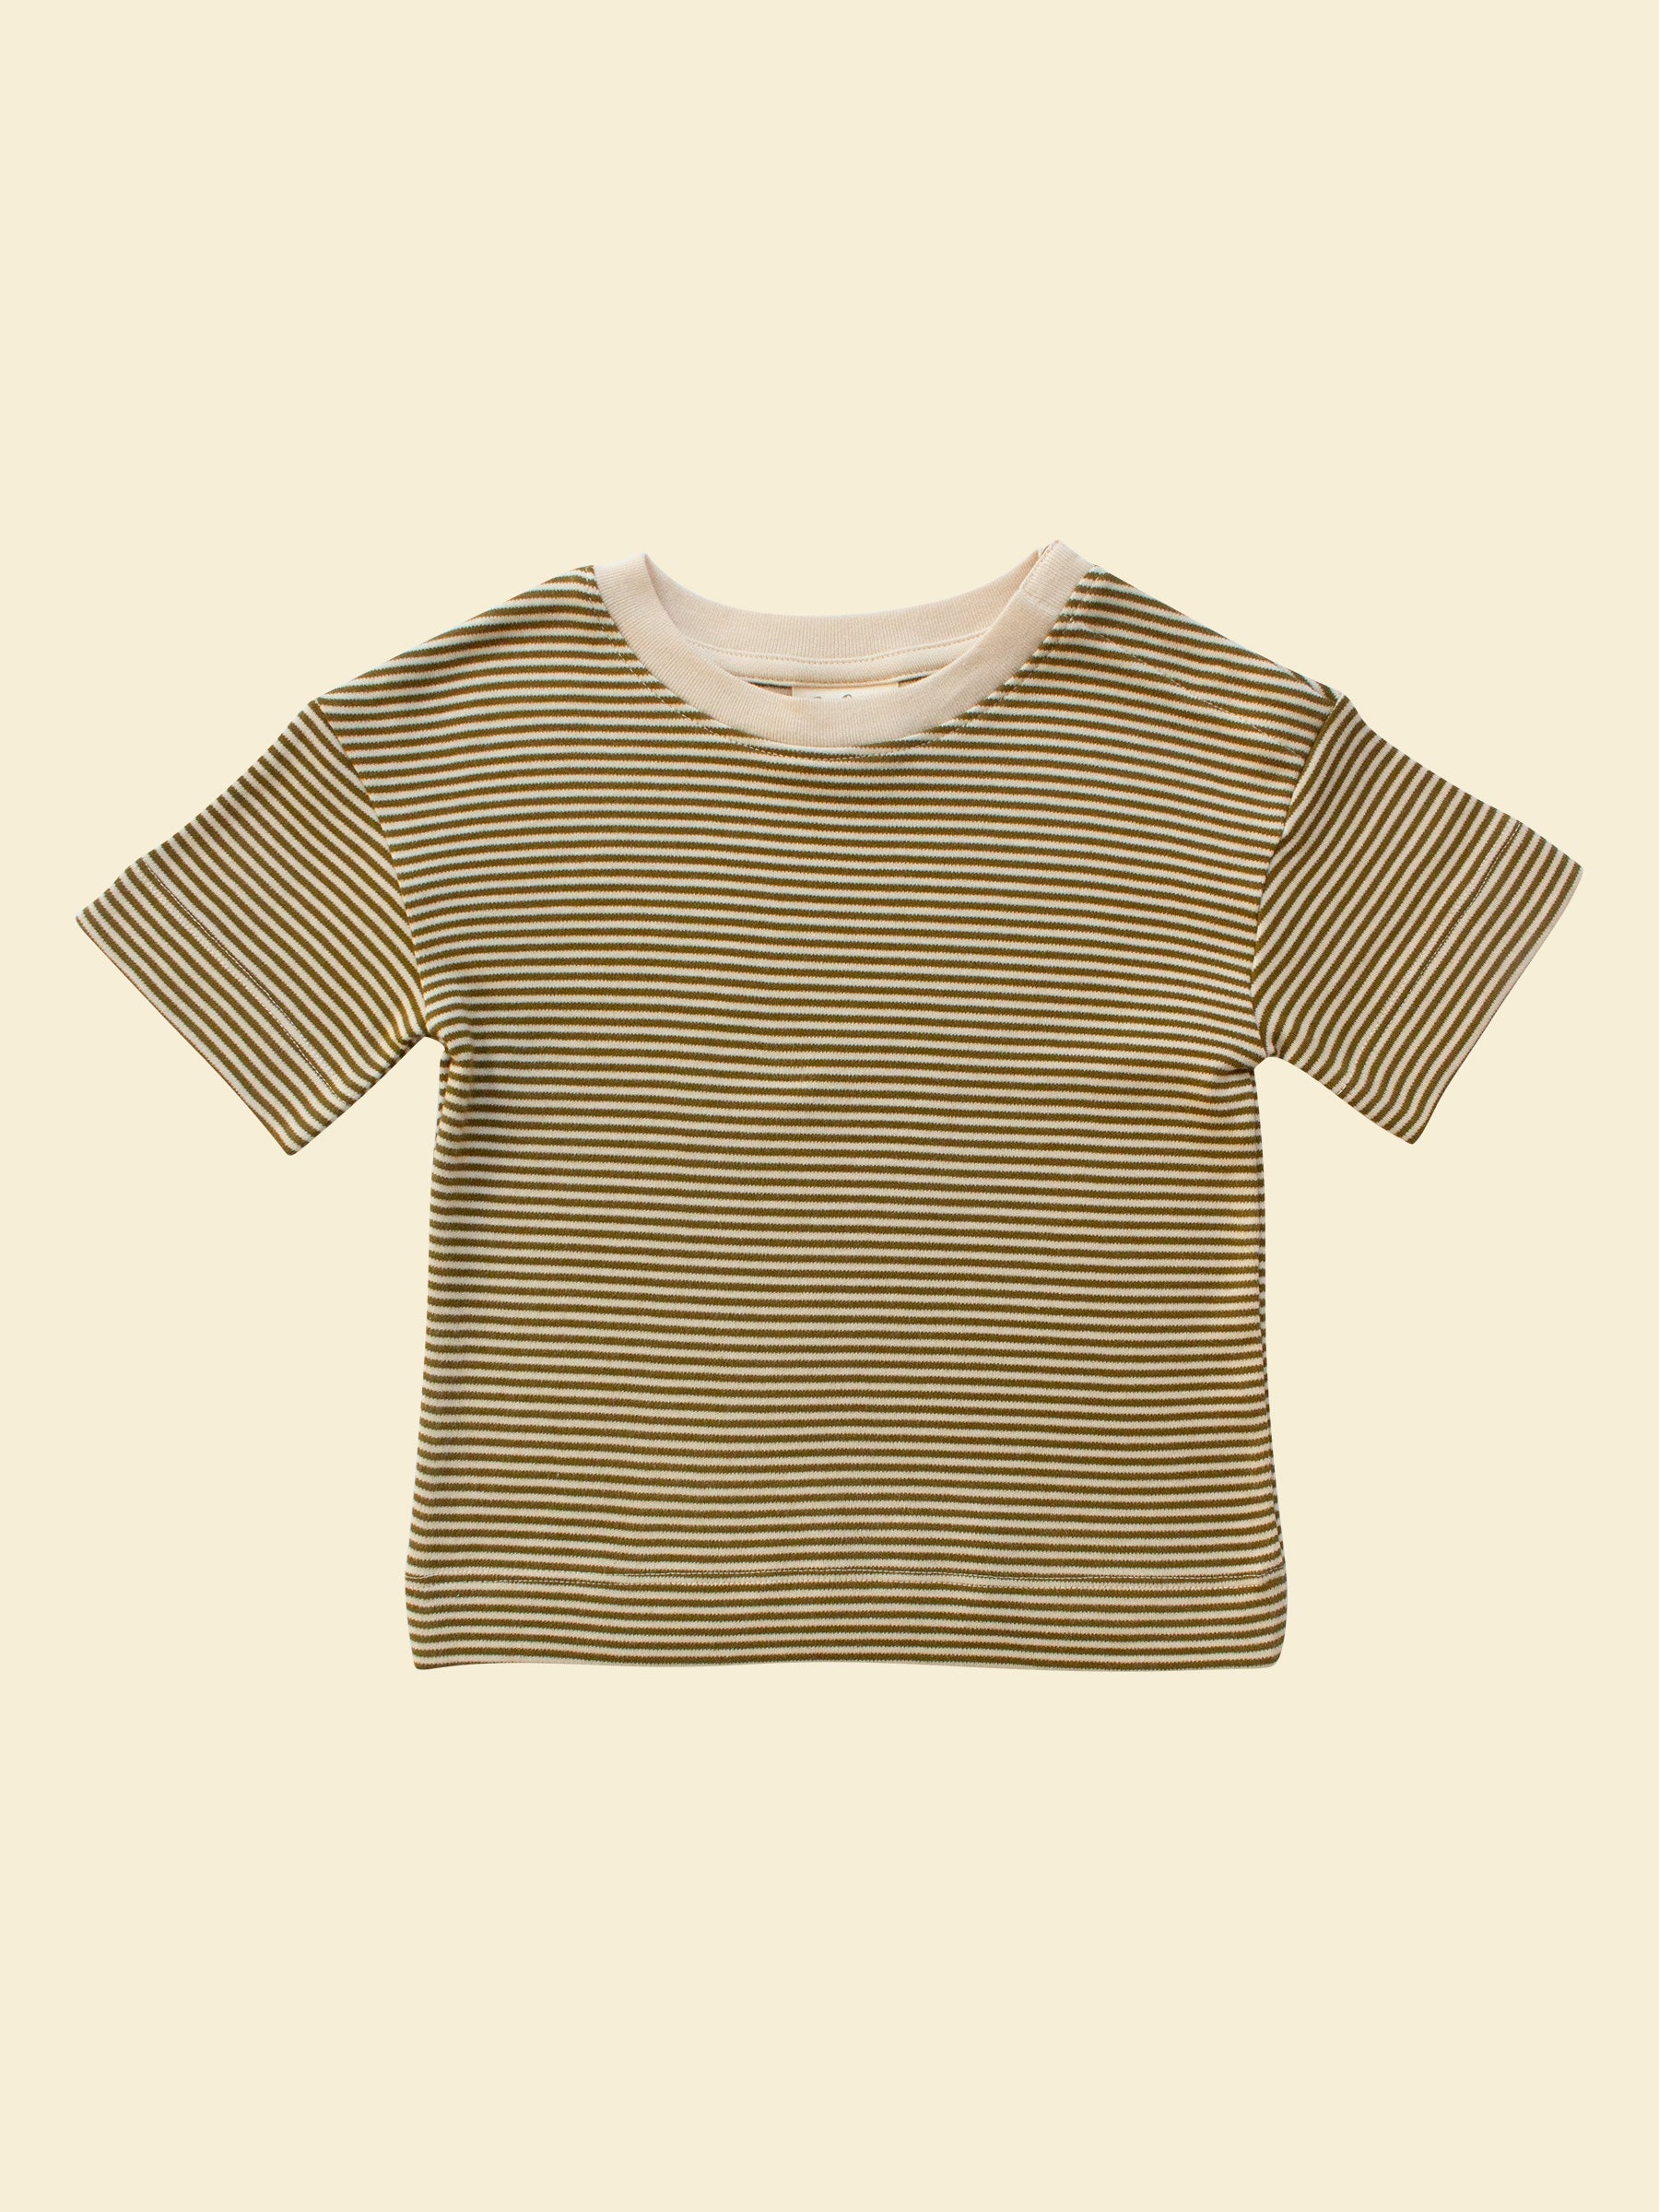 Summer Toddler T-shirt - Olive Stripe